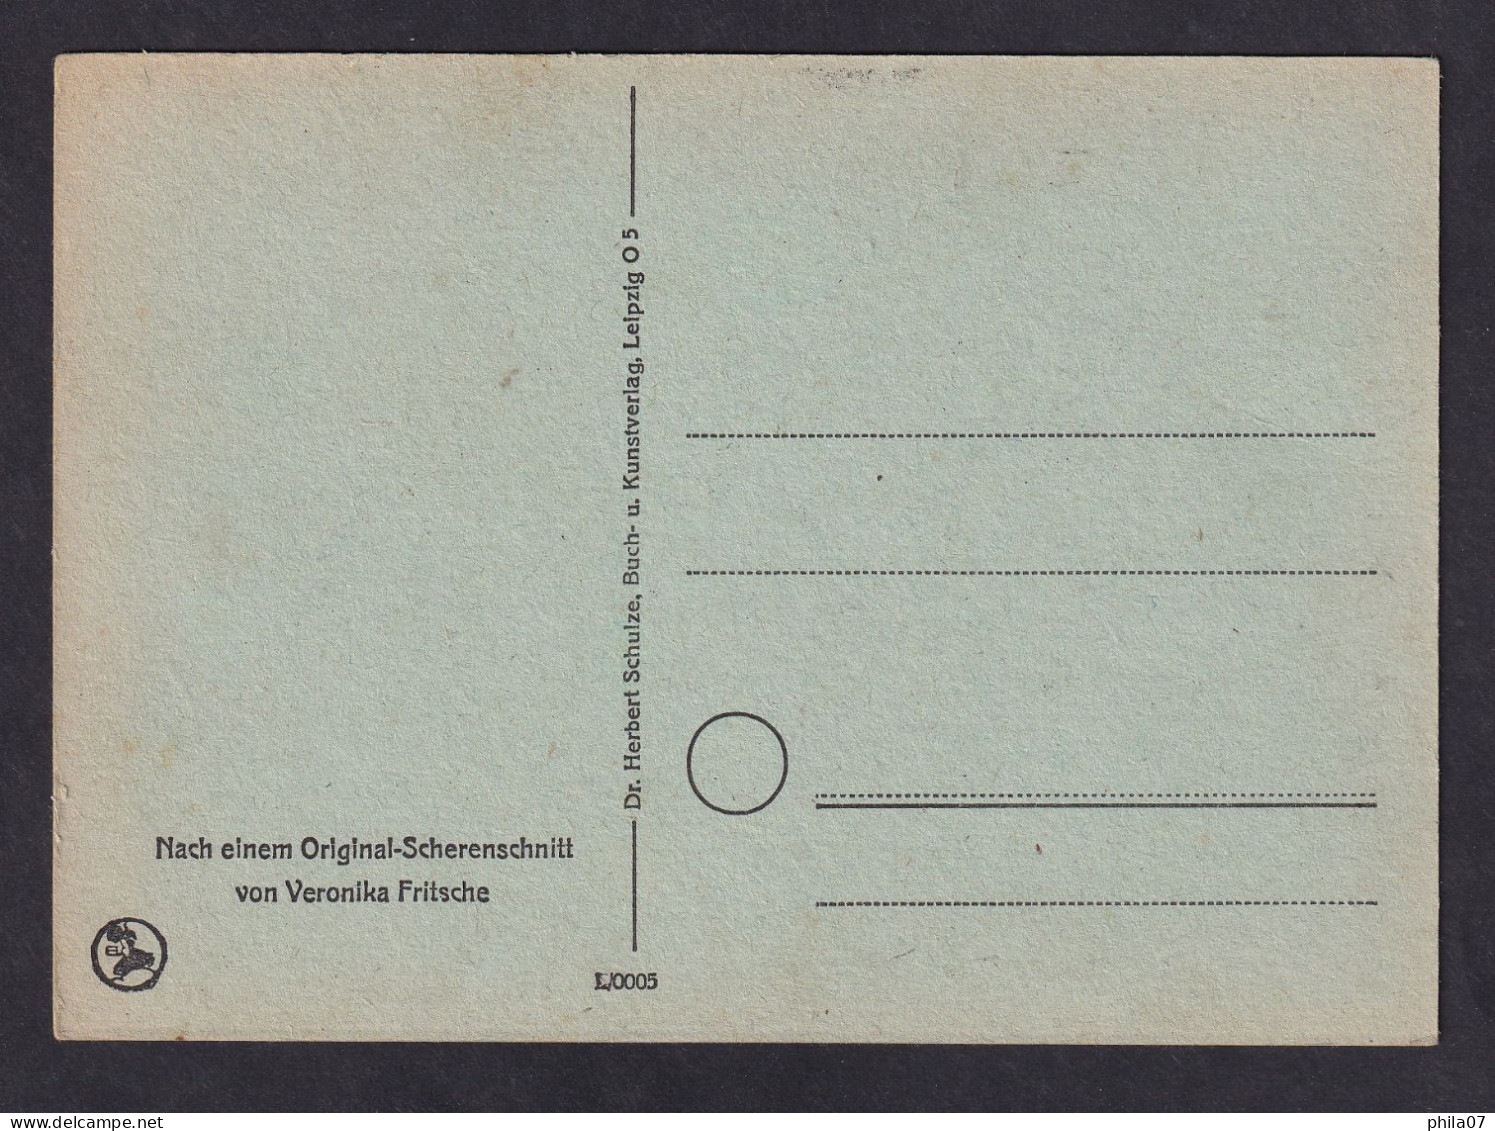 Herzlichen Gluckwunsch - Girl And Dog / Postcard Not Circulated, 2 Scans - Scherenschnitt - Silhouette